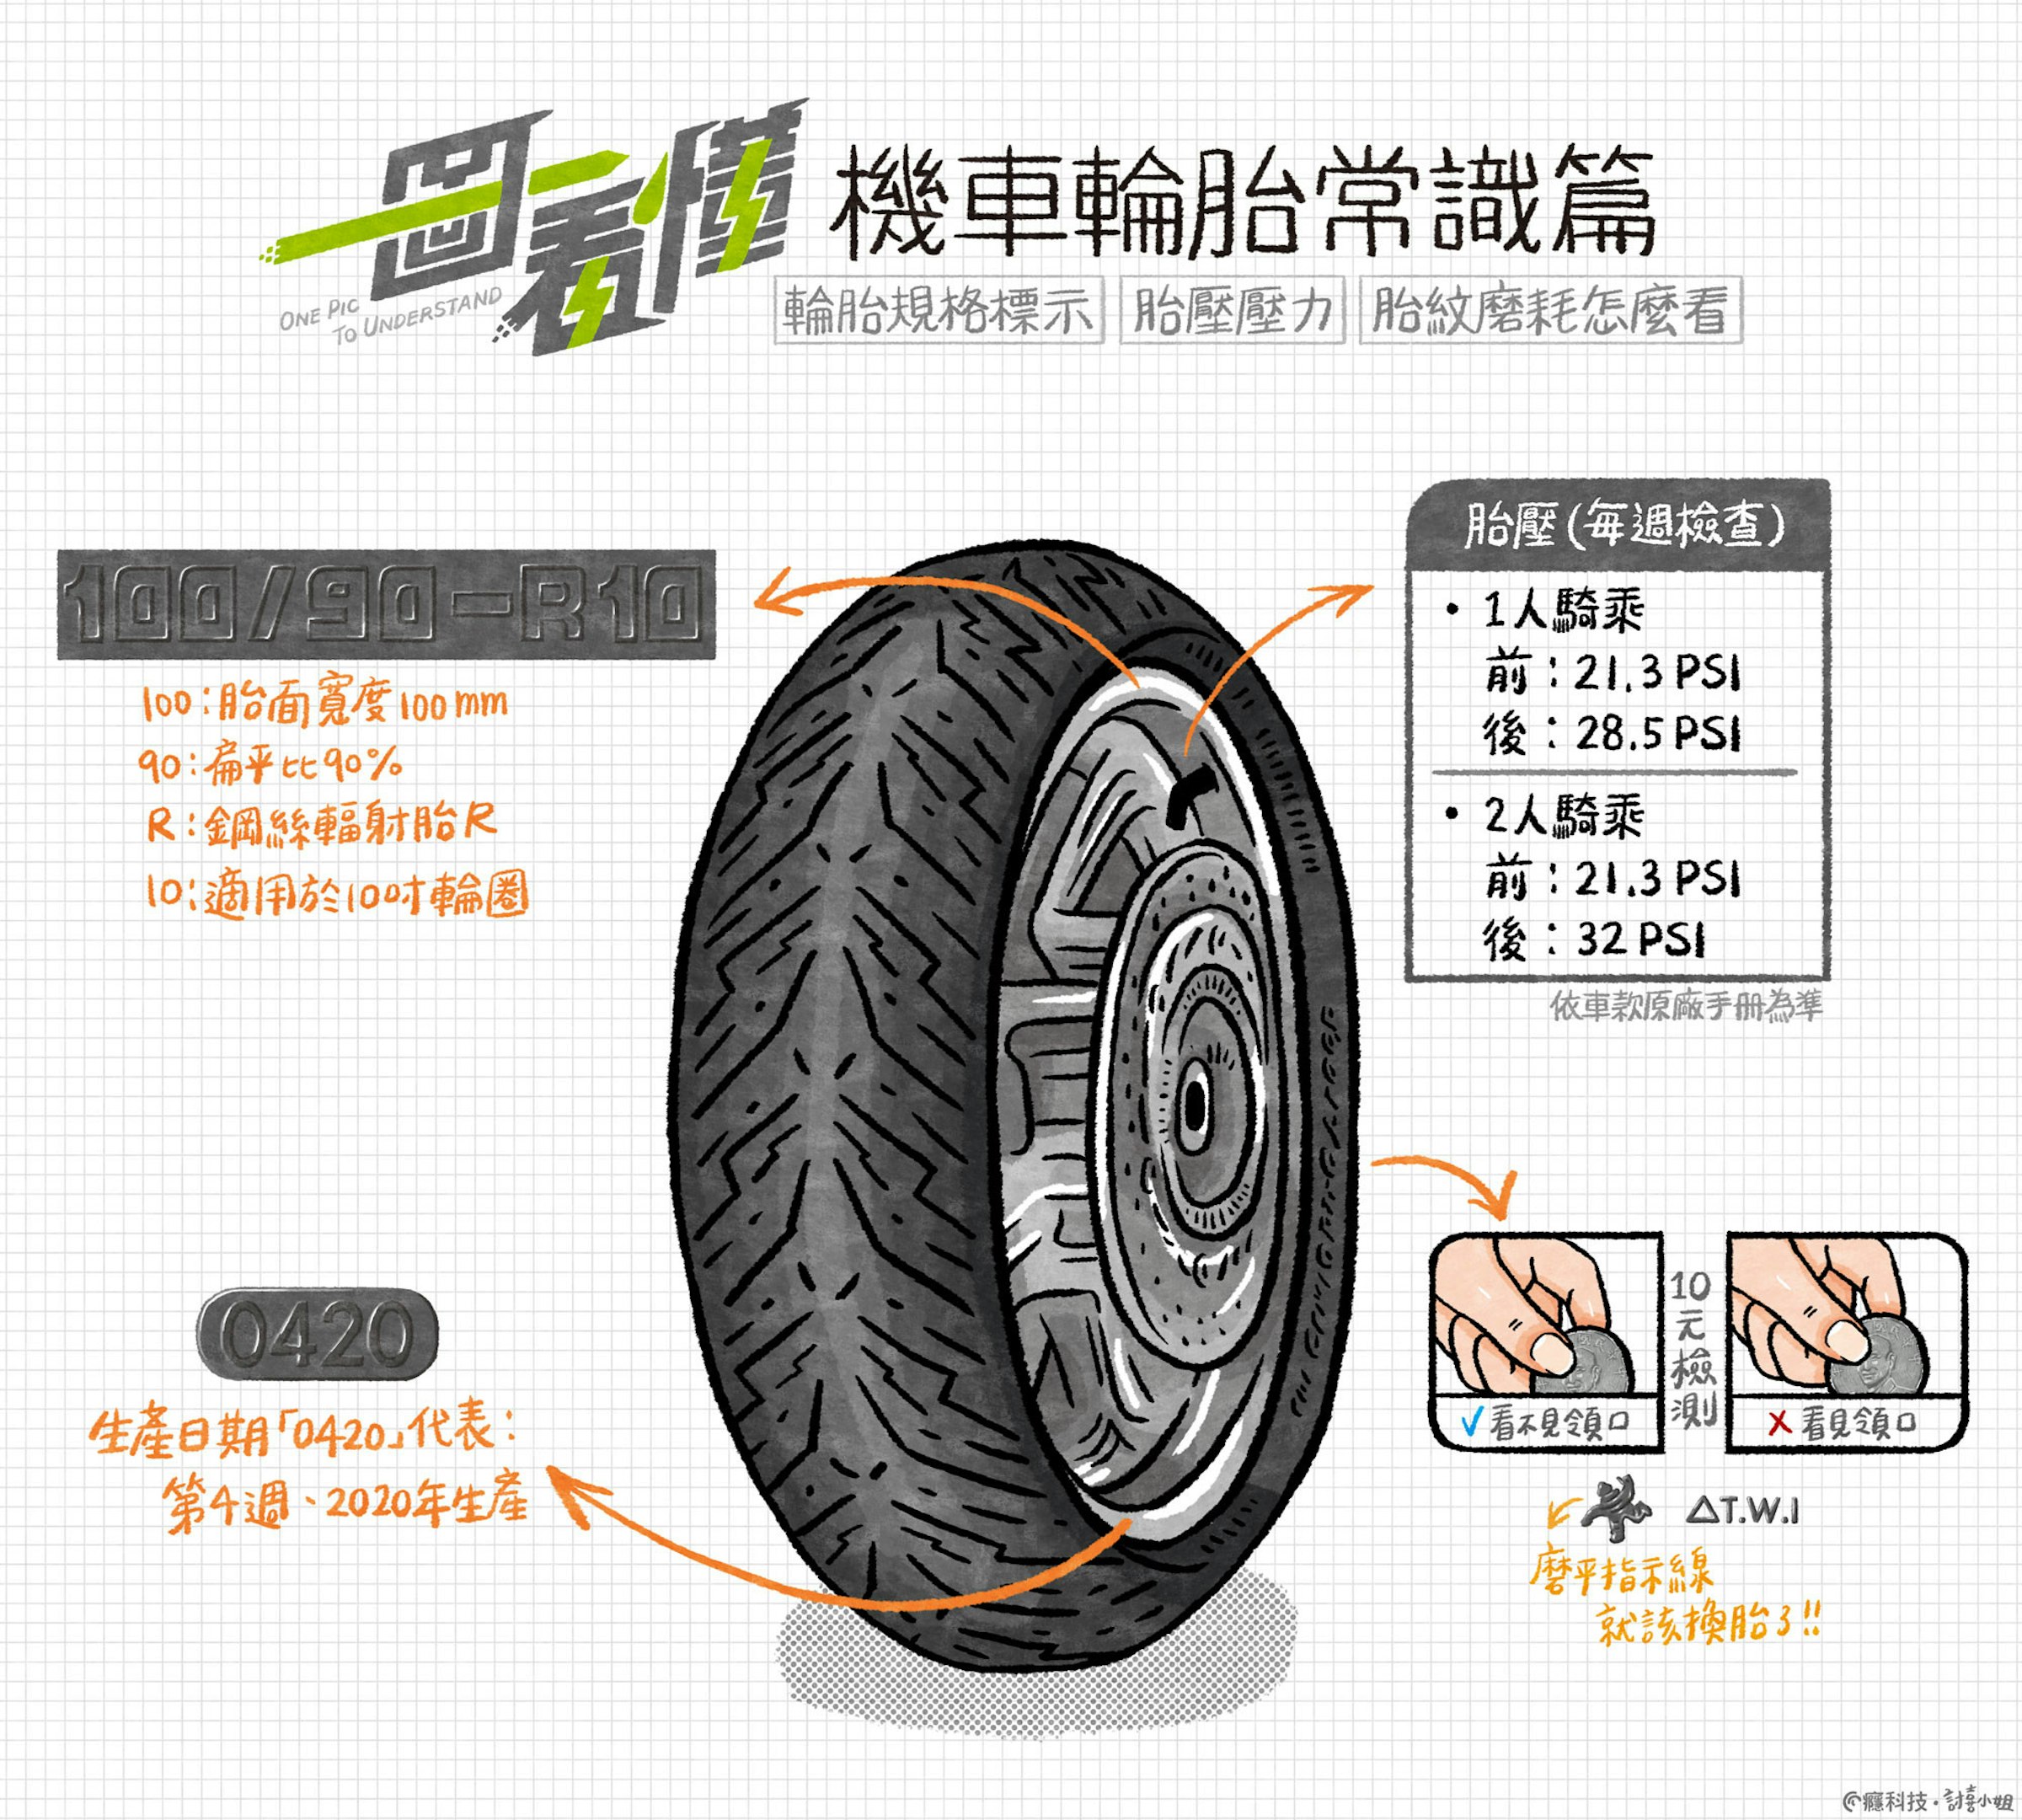 一圖看懂機車輪胎常識篇 輪胎規格標示 胎壓壓力 胎紋磨耗怎麼看 保養 Cool3c